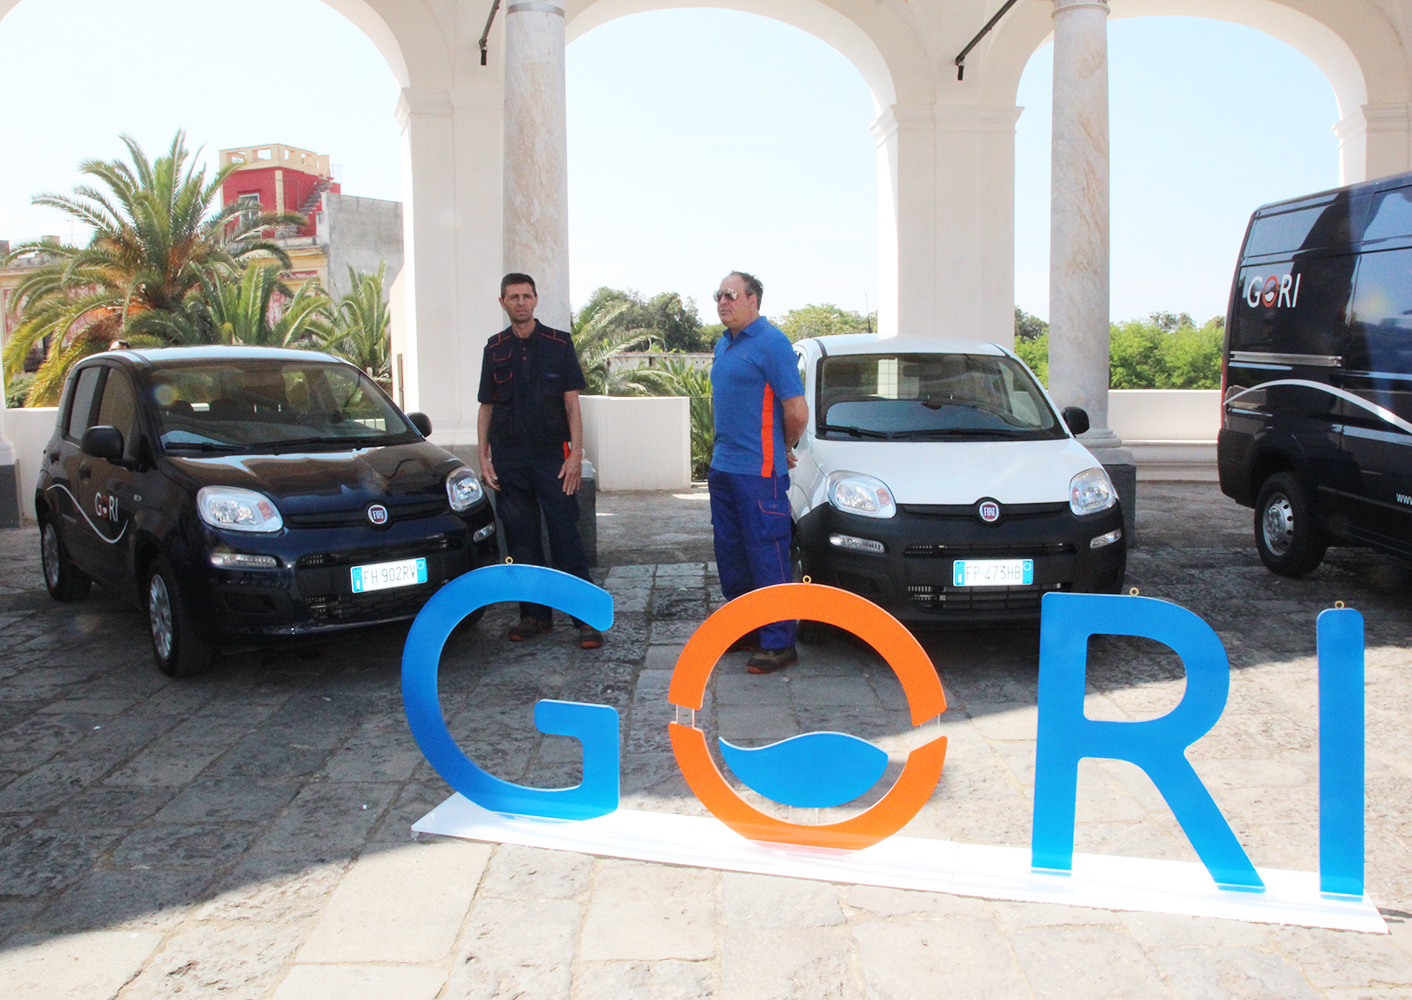 Gori. Sportello online e nuovo logo, parte la nuova campagna di comunicazione (VIDEO)